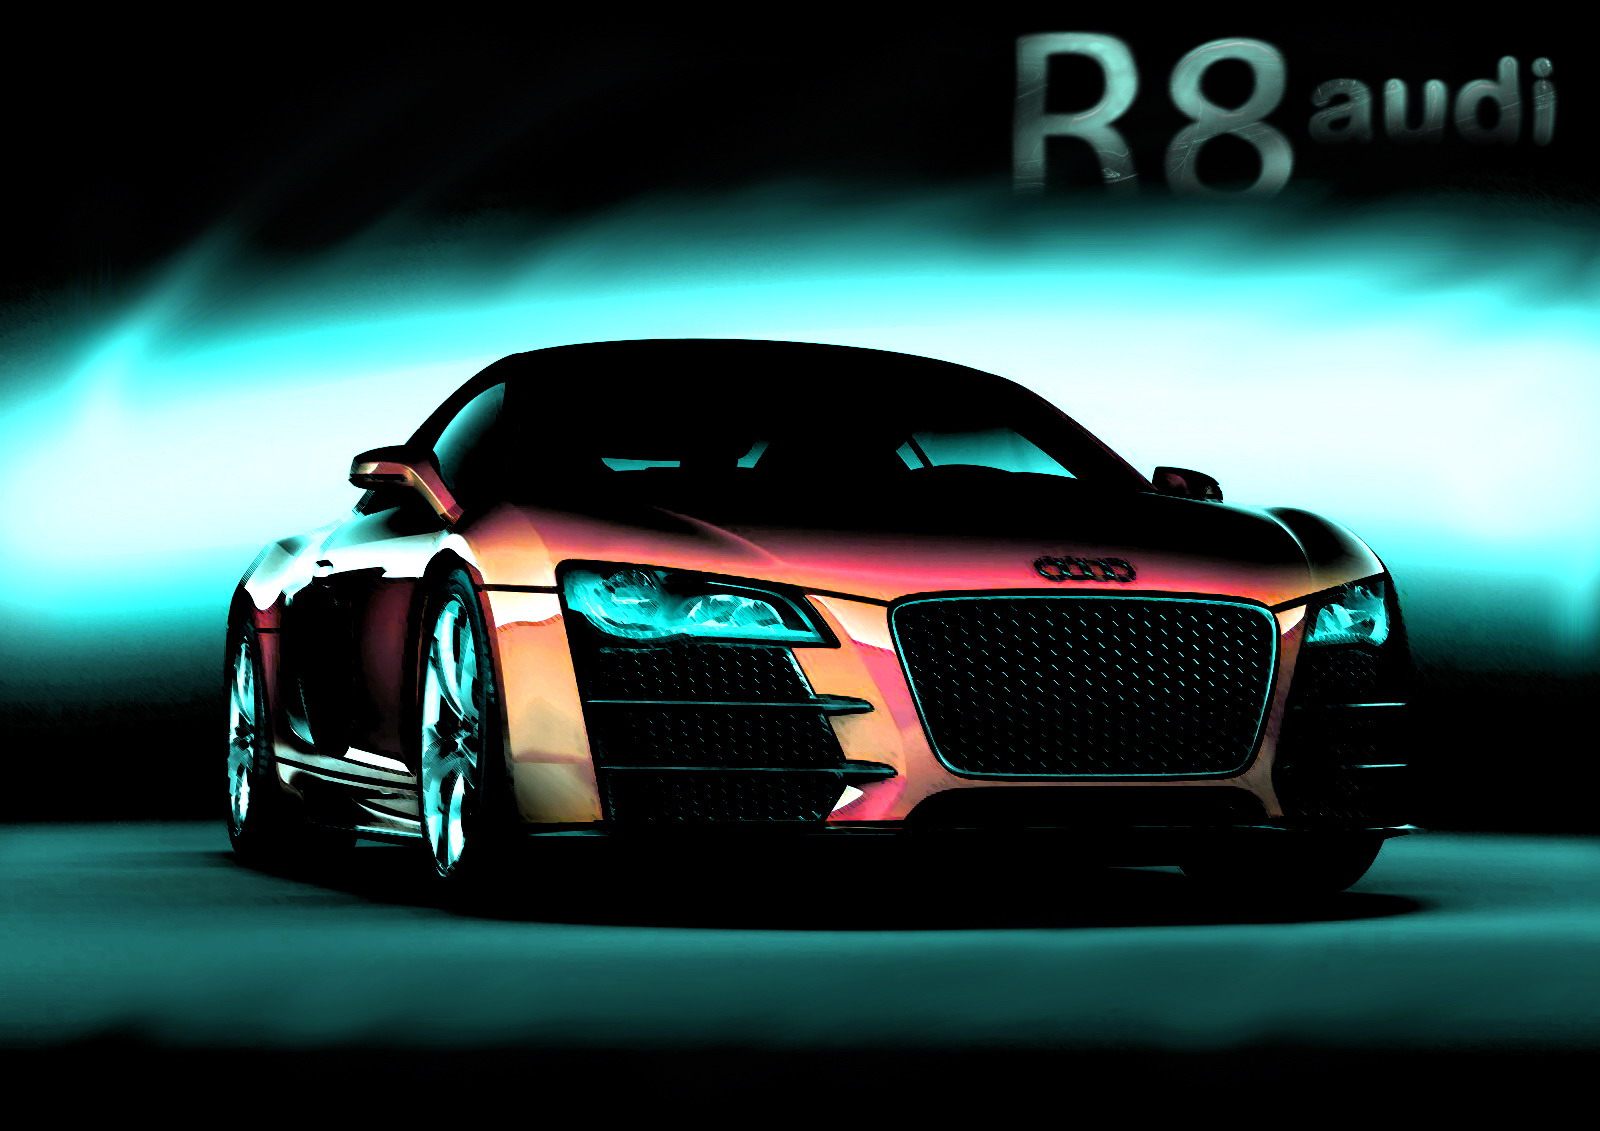 Audi R8 hd wallpaper 1080 1080 Hd Wallpapers   ok U X